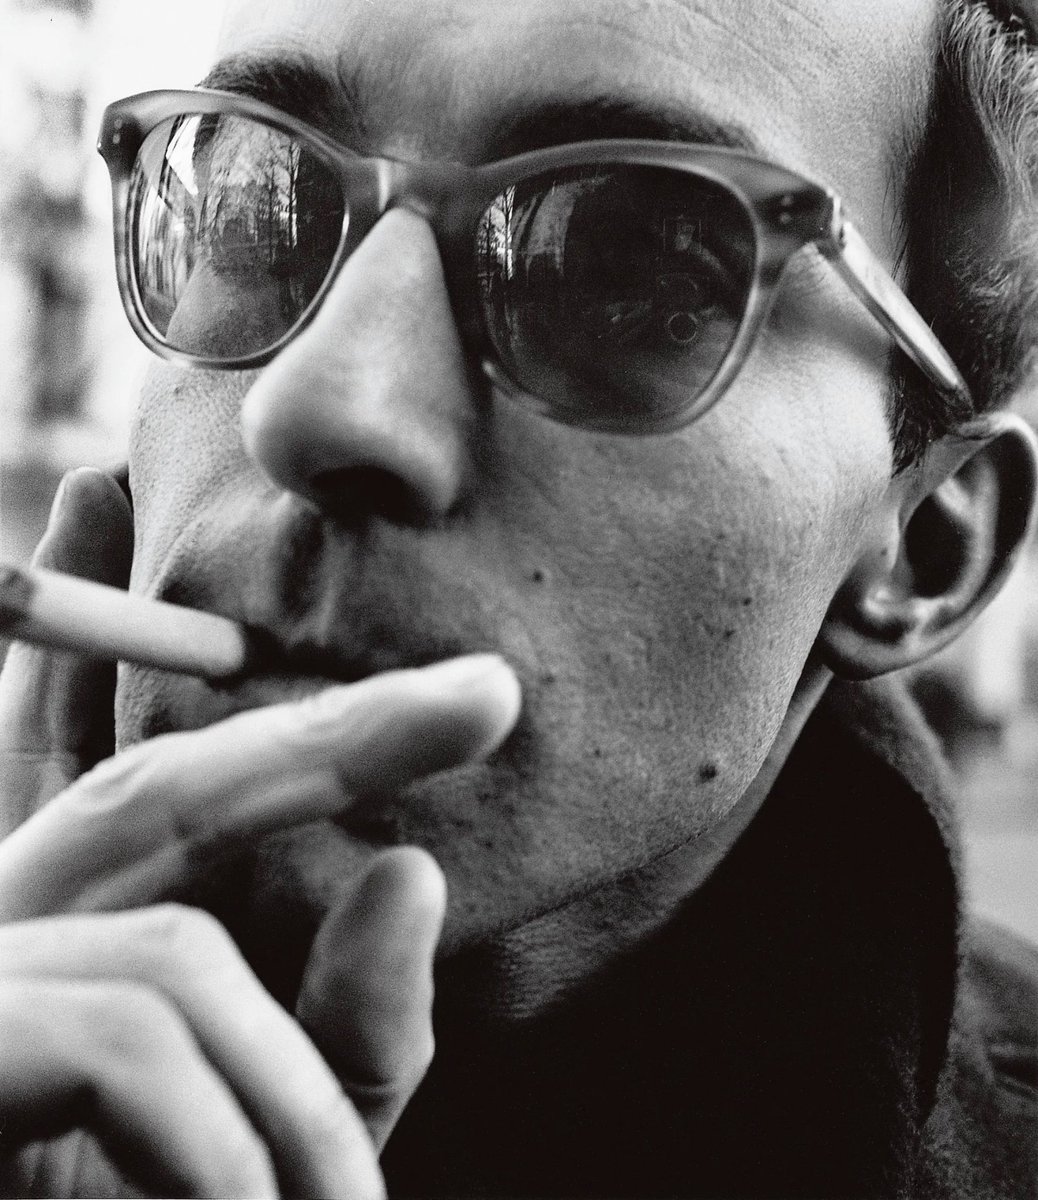 Jean Luc Godard (died 9/13/22) by William Klein (died 9/10/22)